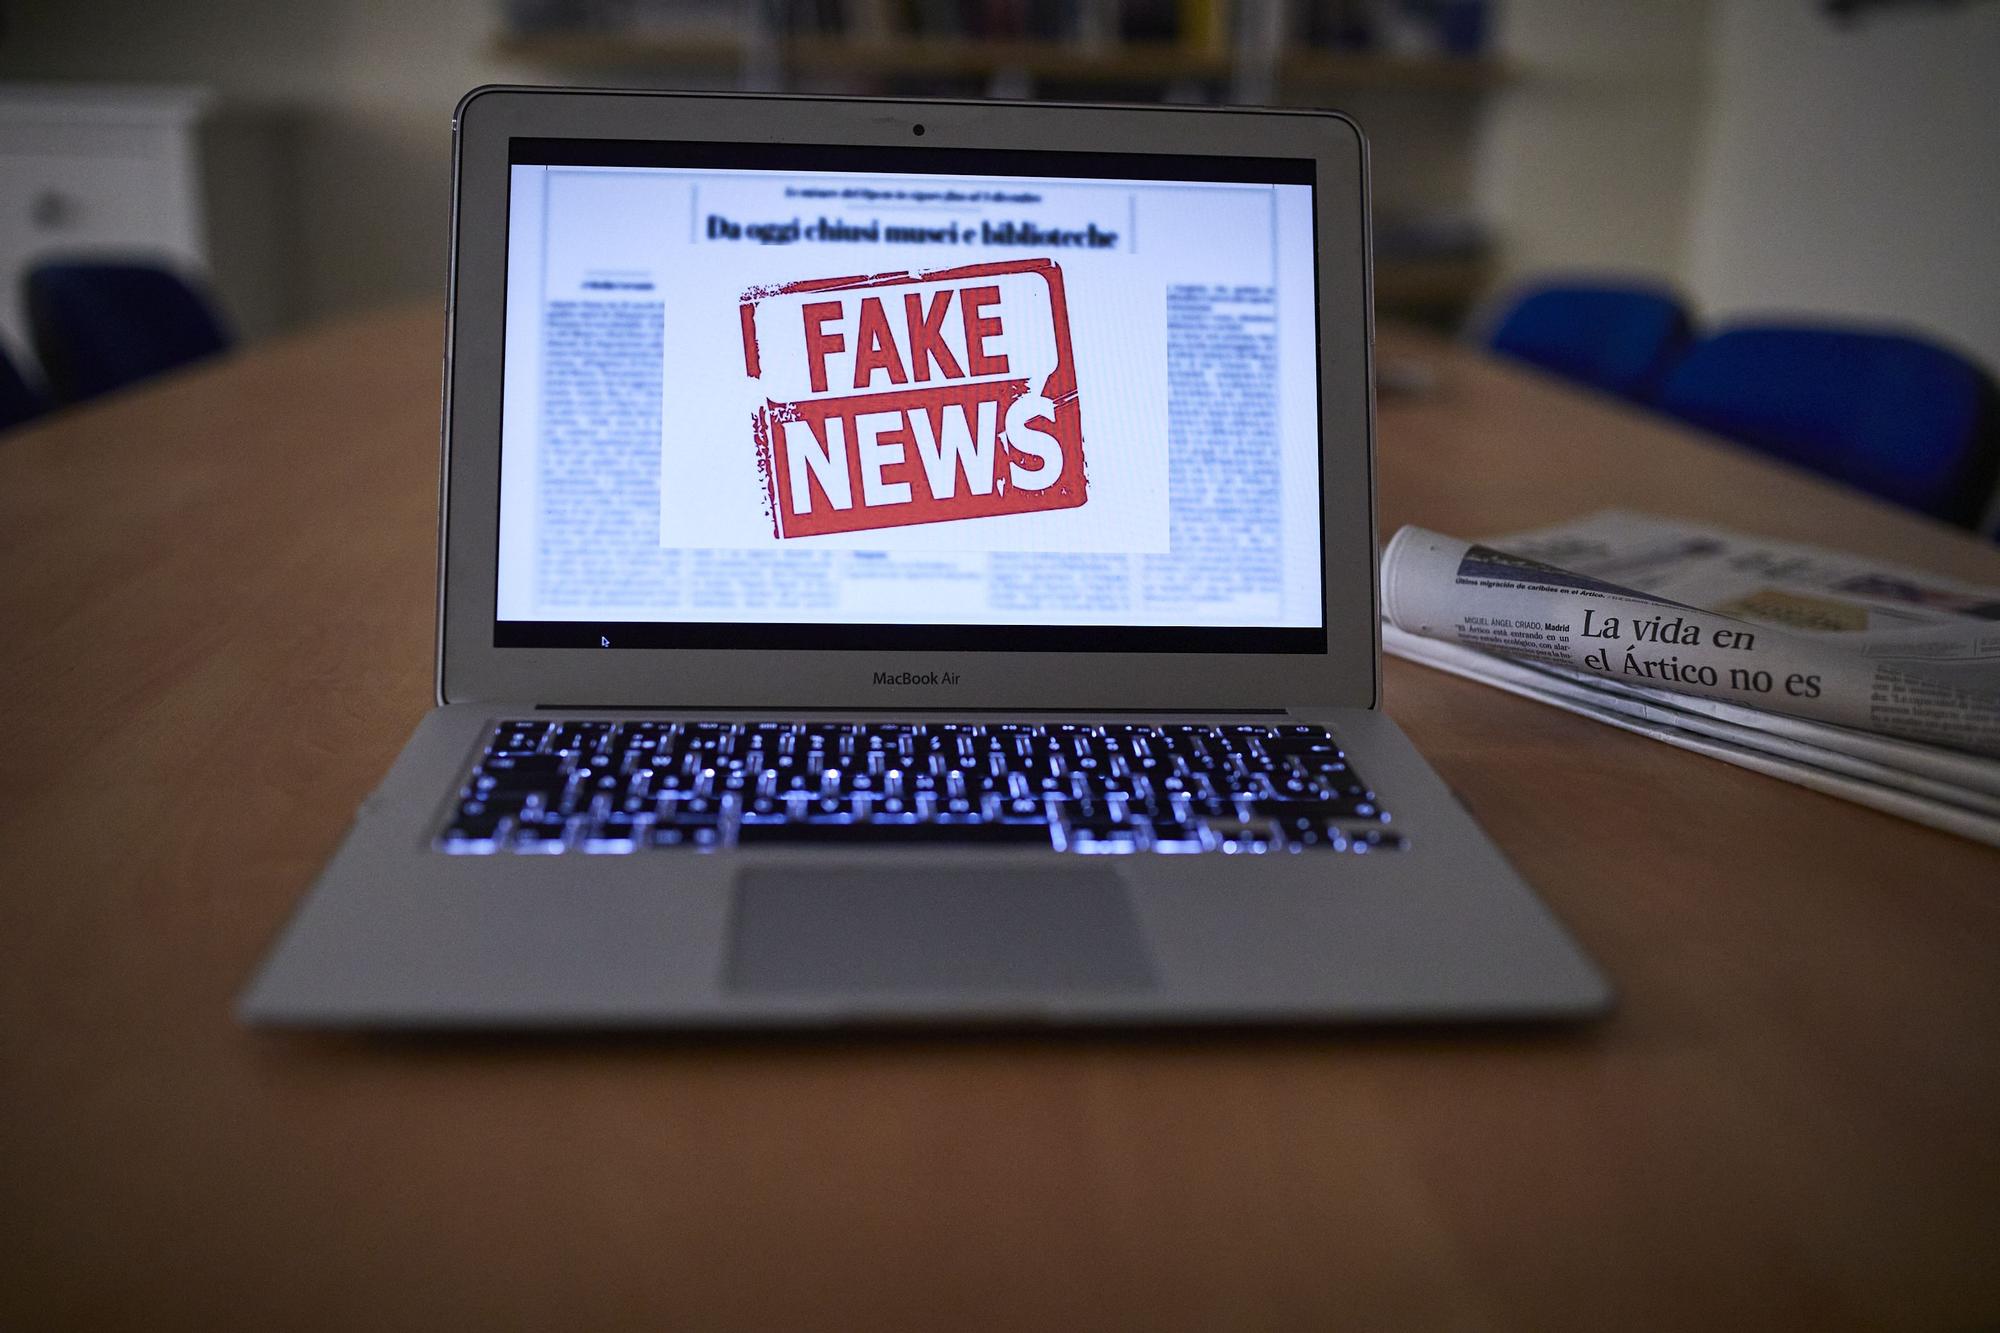 Una persona lee en un ordenador una noticia falsa.